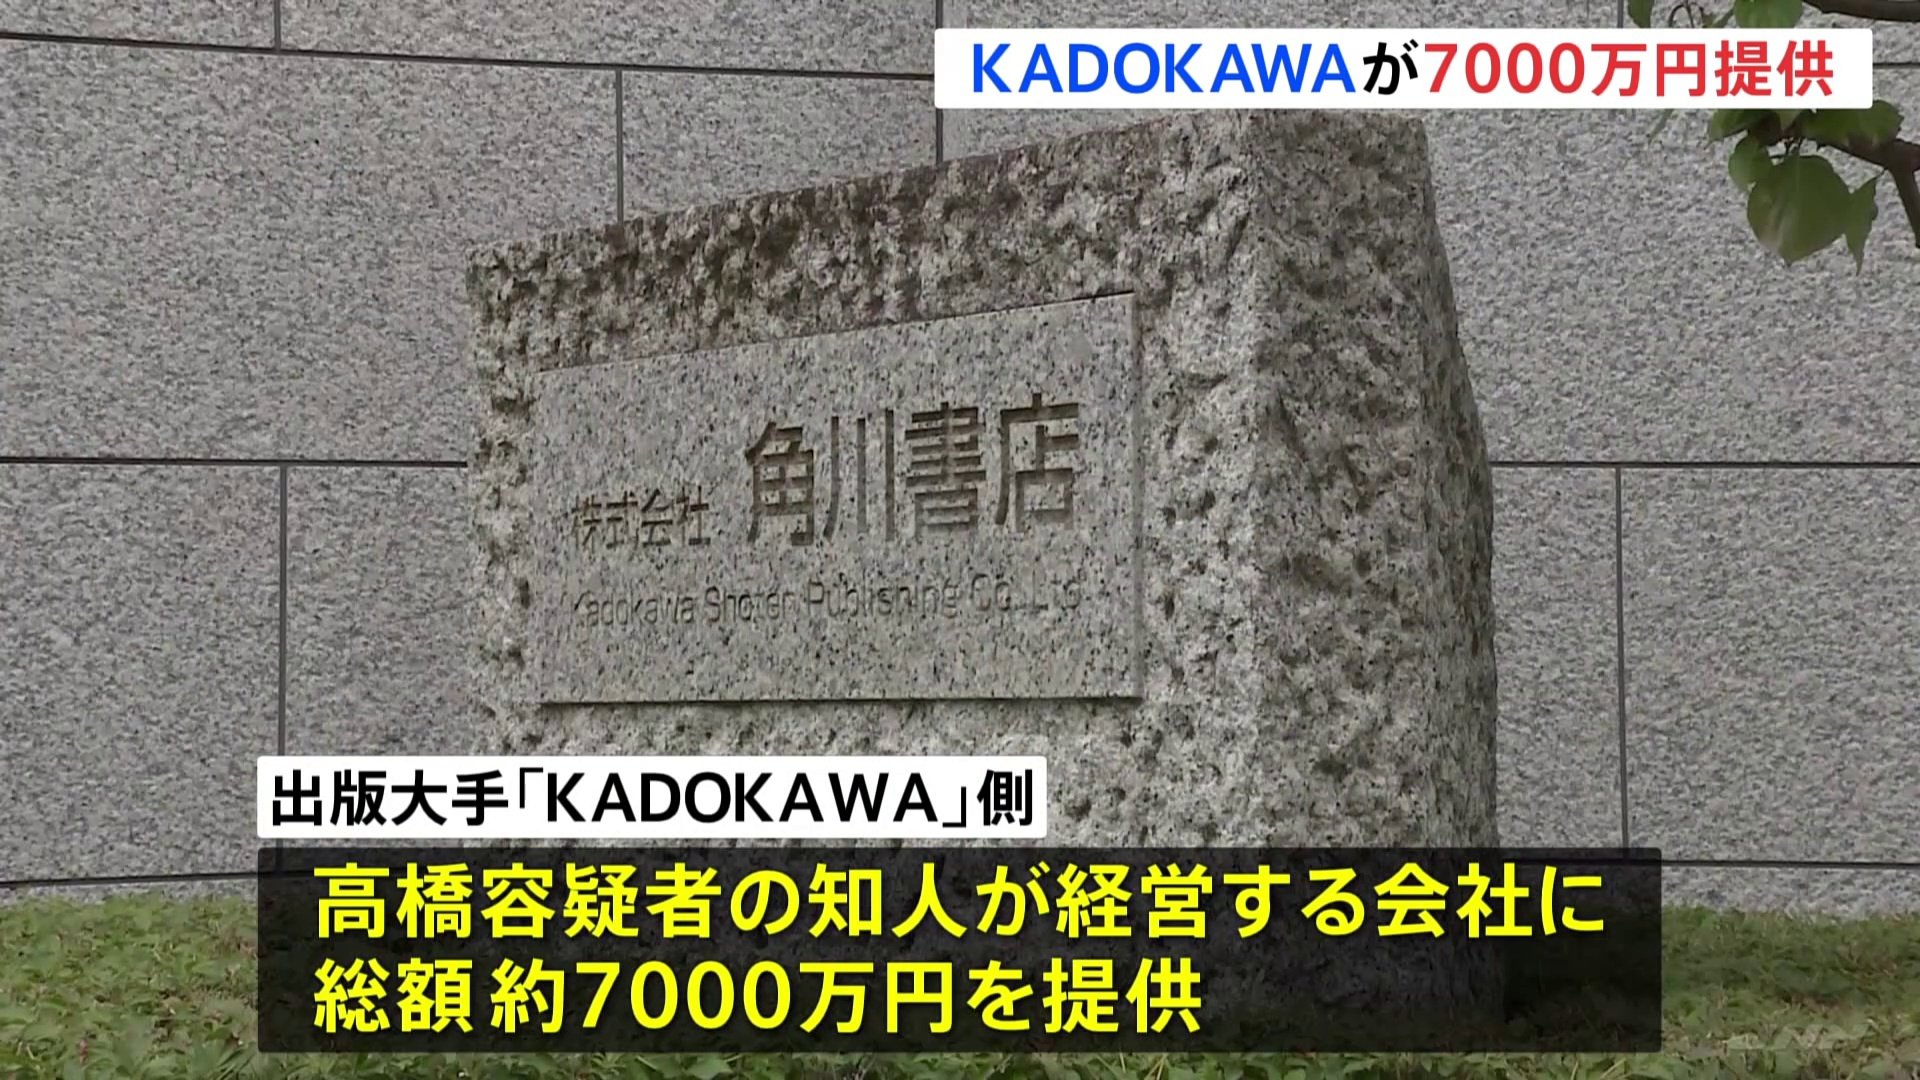 大会スポンサー「KADOKAWA」が組織委元理事の知人会社に約7000万提供　コンサルタント契約の対価として　東京五輪汚職事件